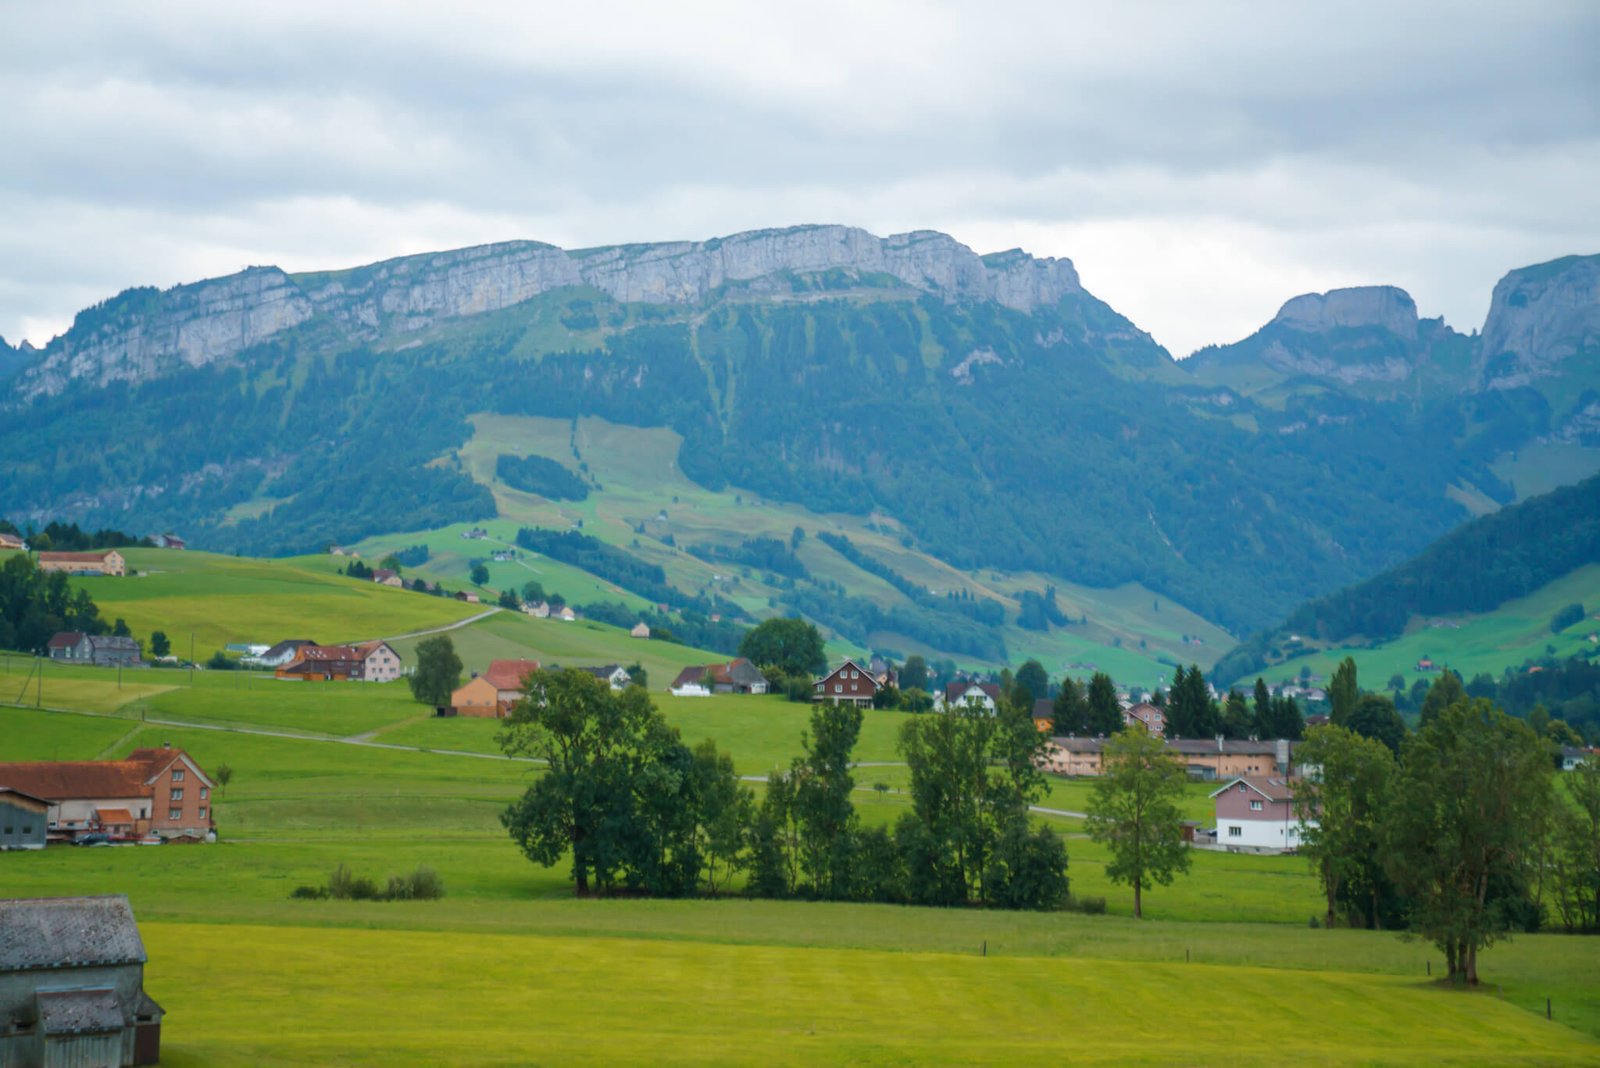 Visiting Liechtenstein